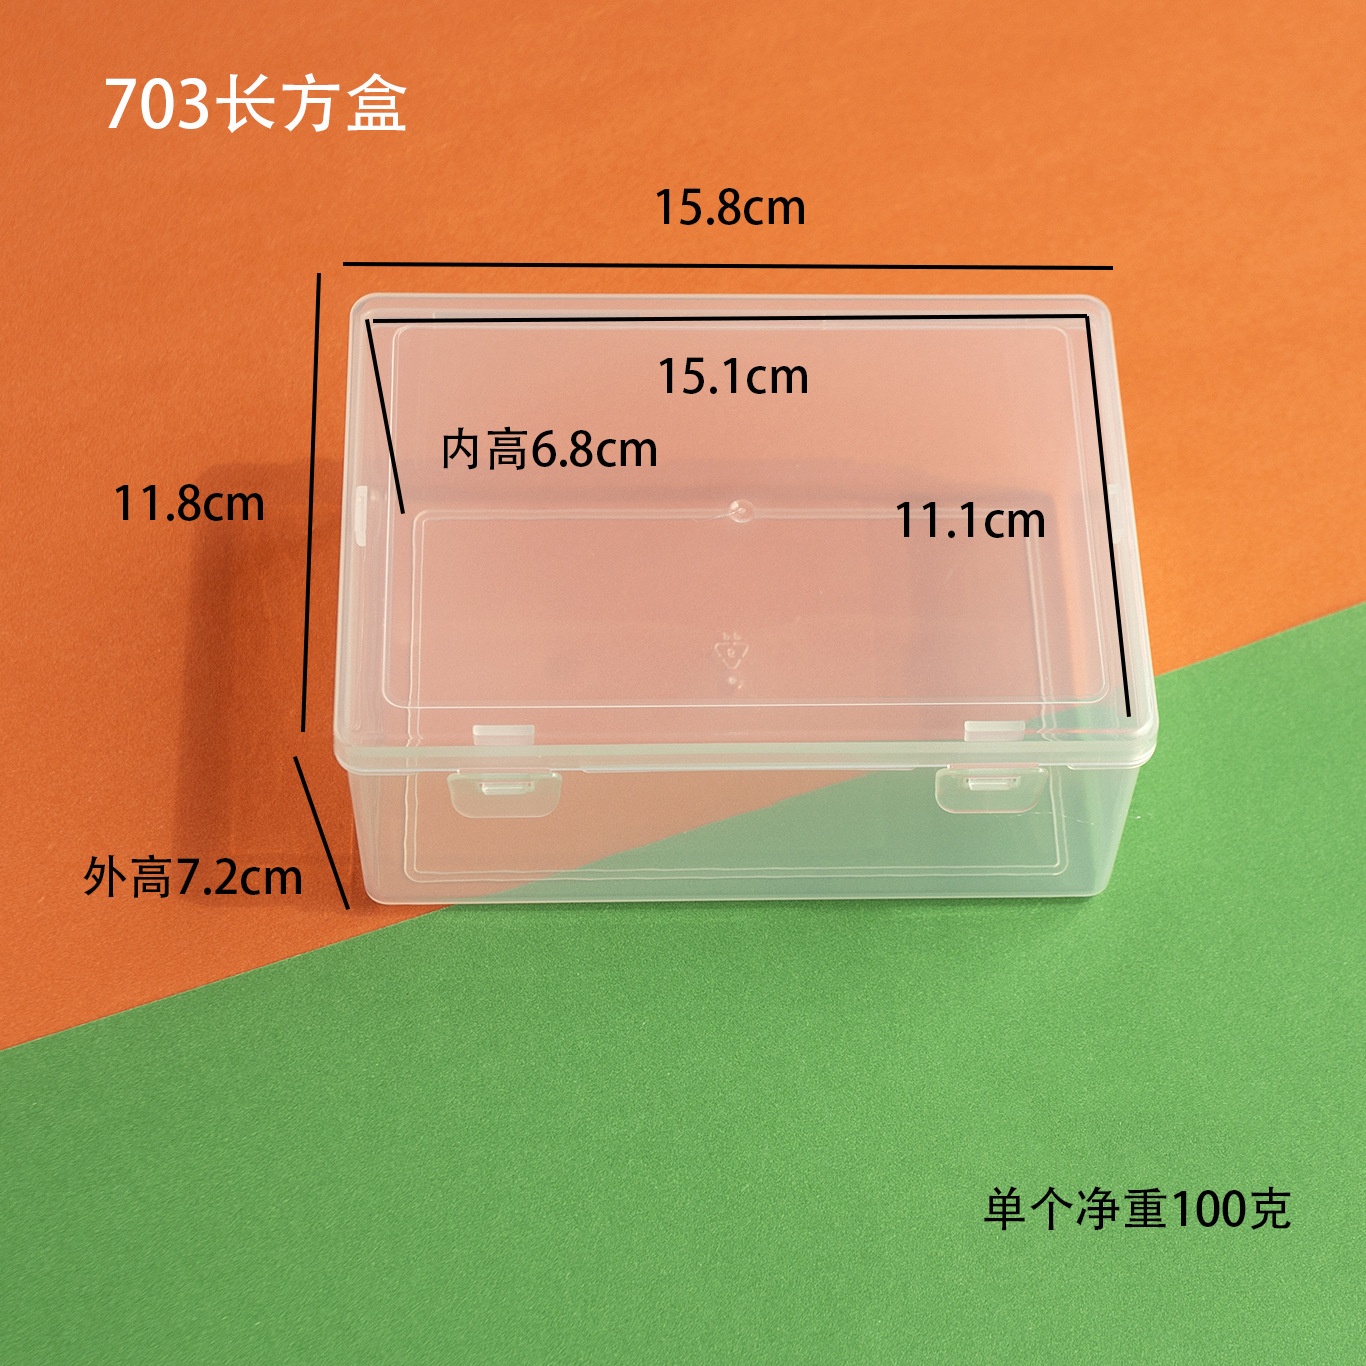 长方形渔具透明塑料包装盒饰品配件元件工具收纳空盒翻盖储物盒子 - 图3